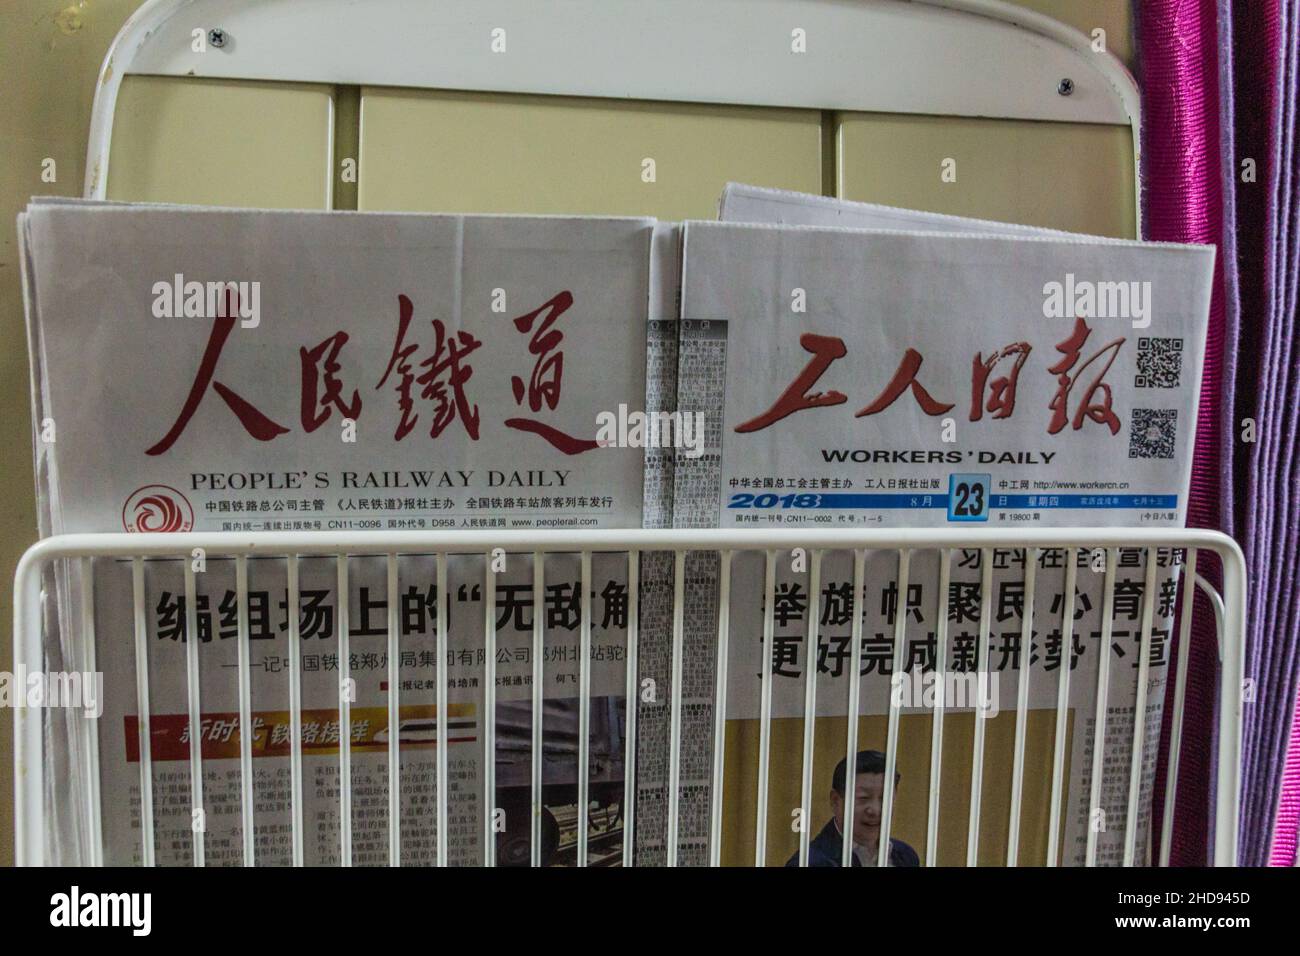 LANZHOU, CHINA - 25. AUGUST 2018: People's Railway Daily und Workers' Daily Zeitungen in einem Zug in China Stockfoto